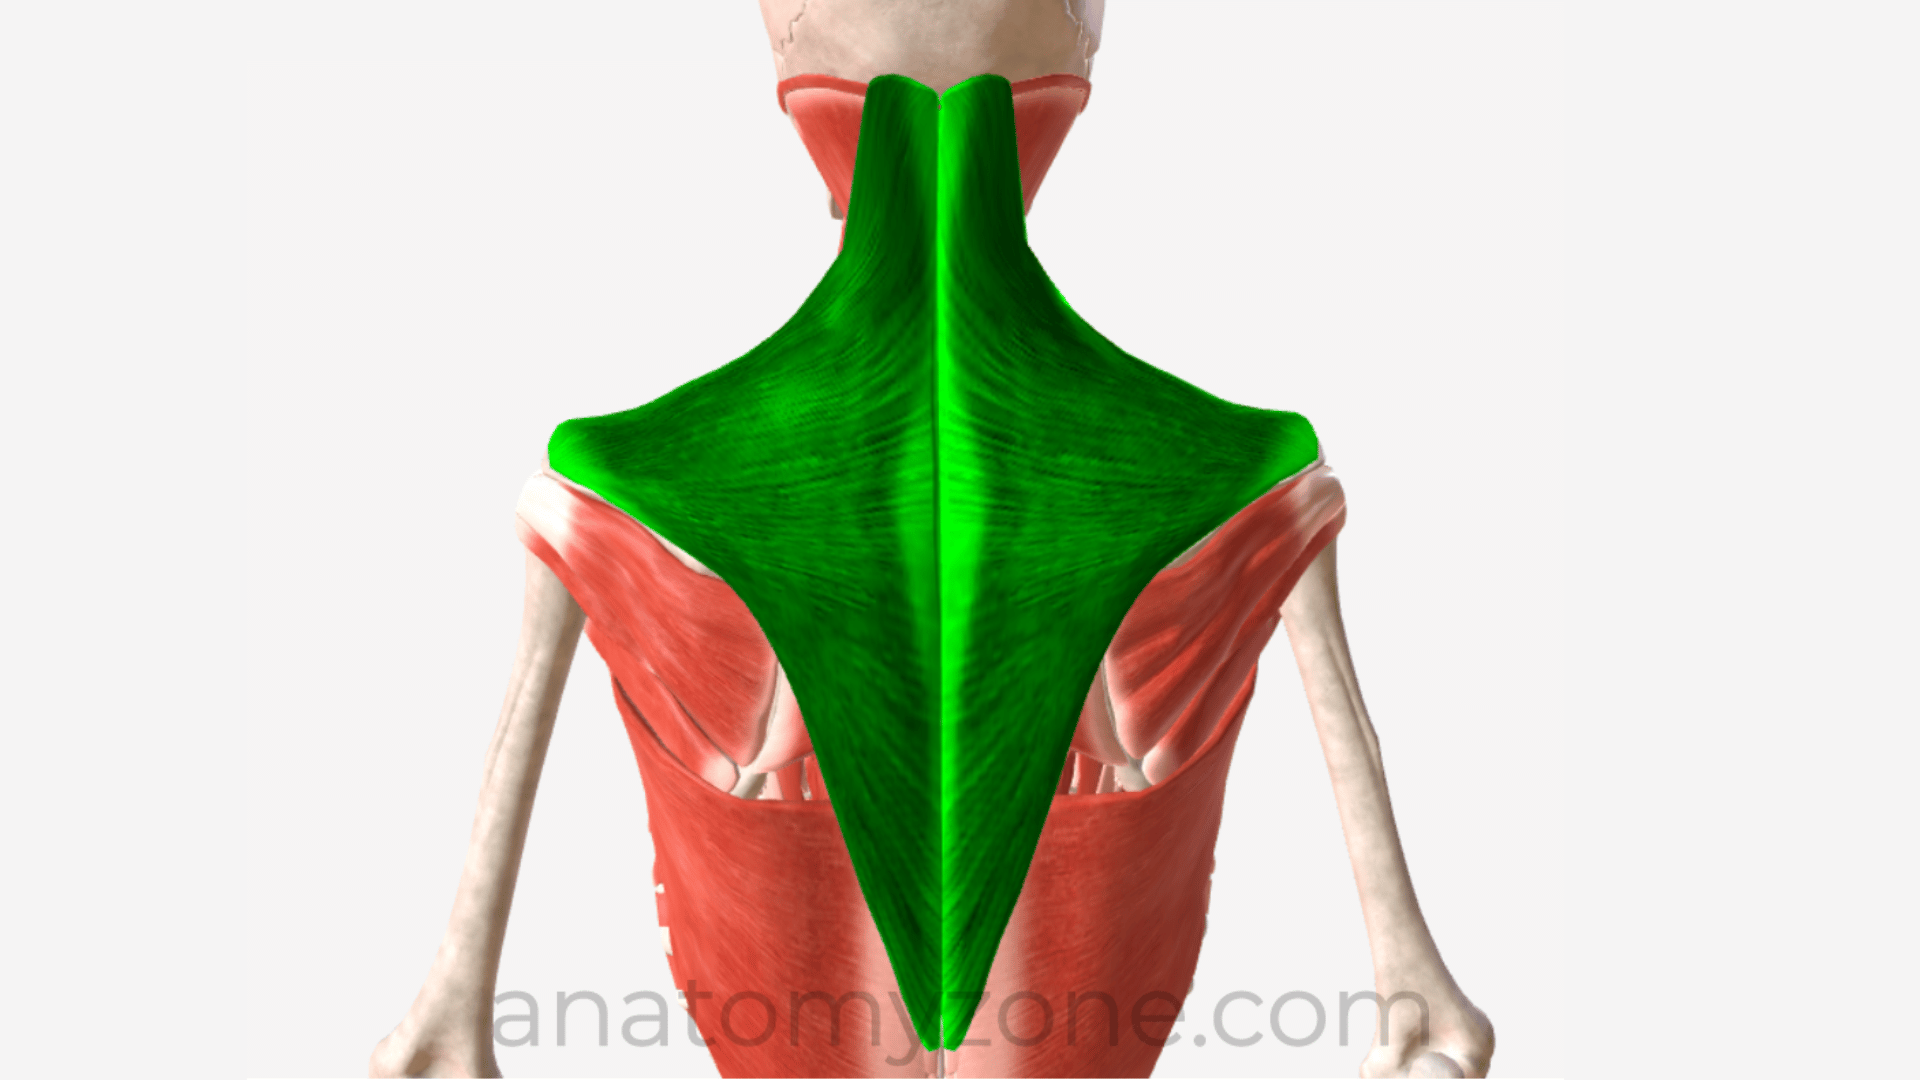 Trapezius muscle anatoym